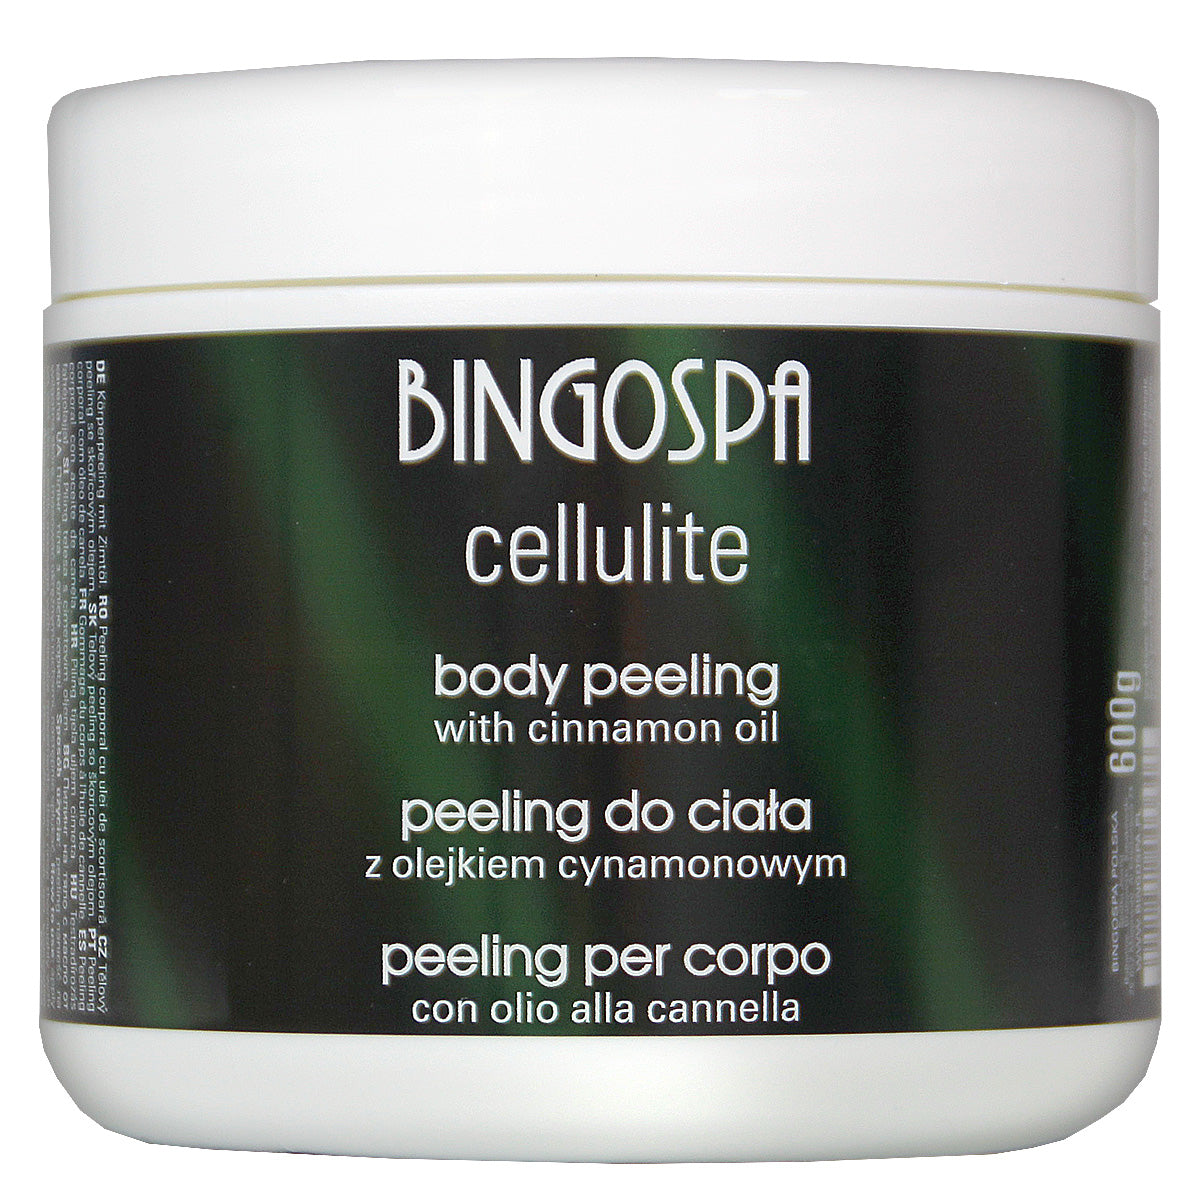 Peeling do ciała z olejkiem cynamonowym  BINGOSPA cellulite